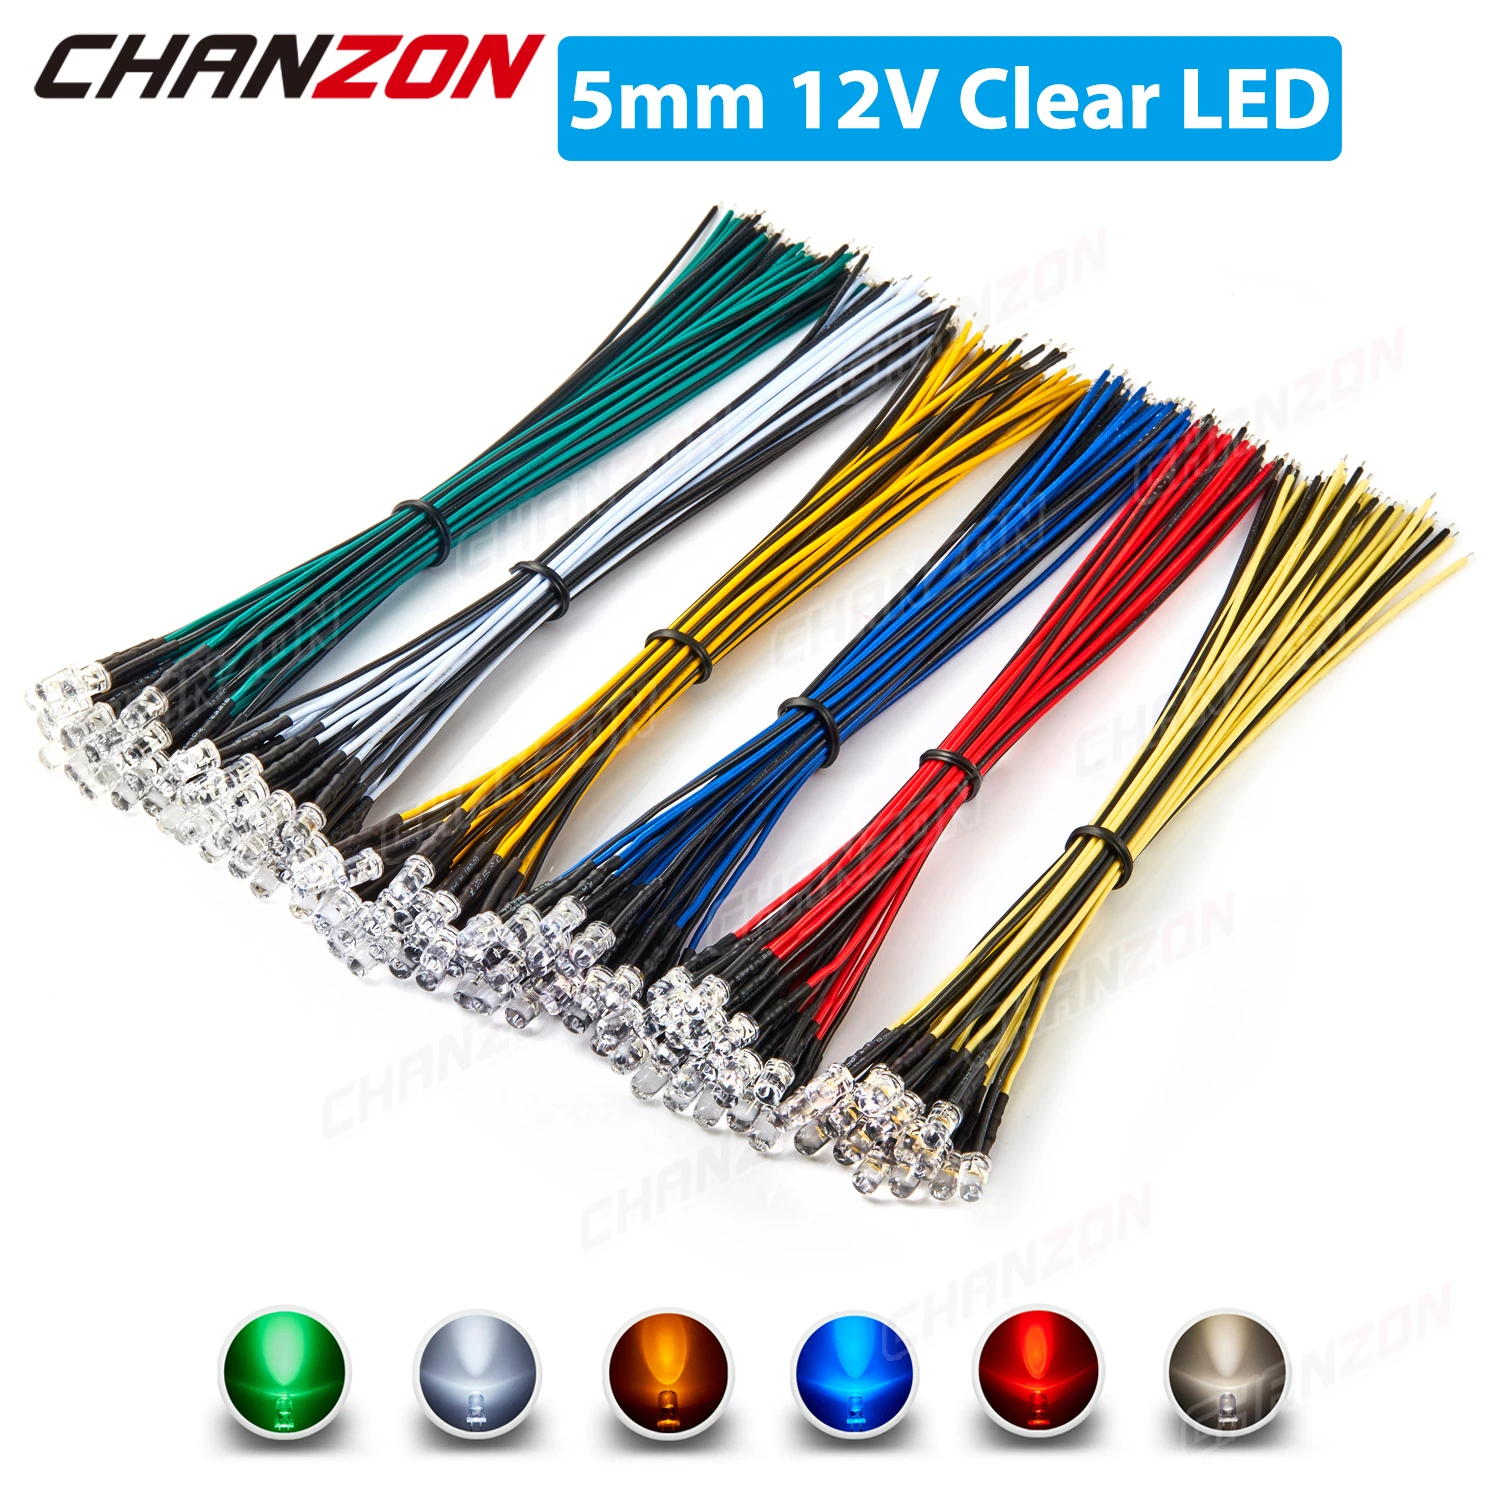 Kit de diodos LED precableados de 5mm, 12V, Blanco cálido, rojo, verde, azul, amarillo, Bombilla de Cable precableada, surtido, 120 Uds.